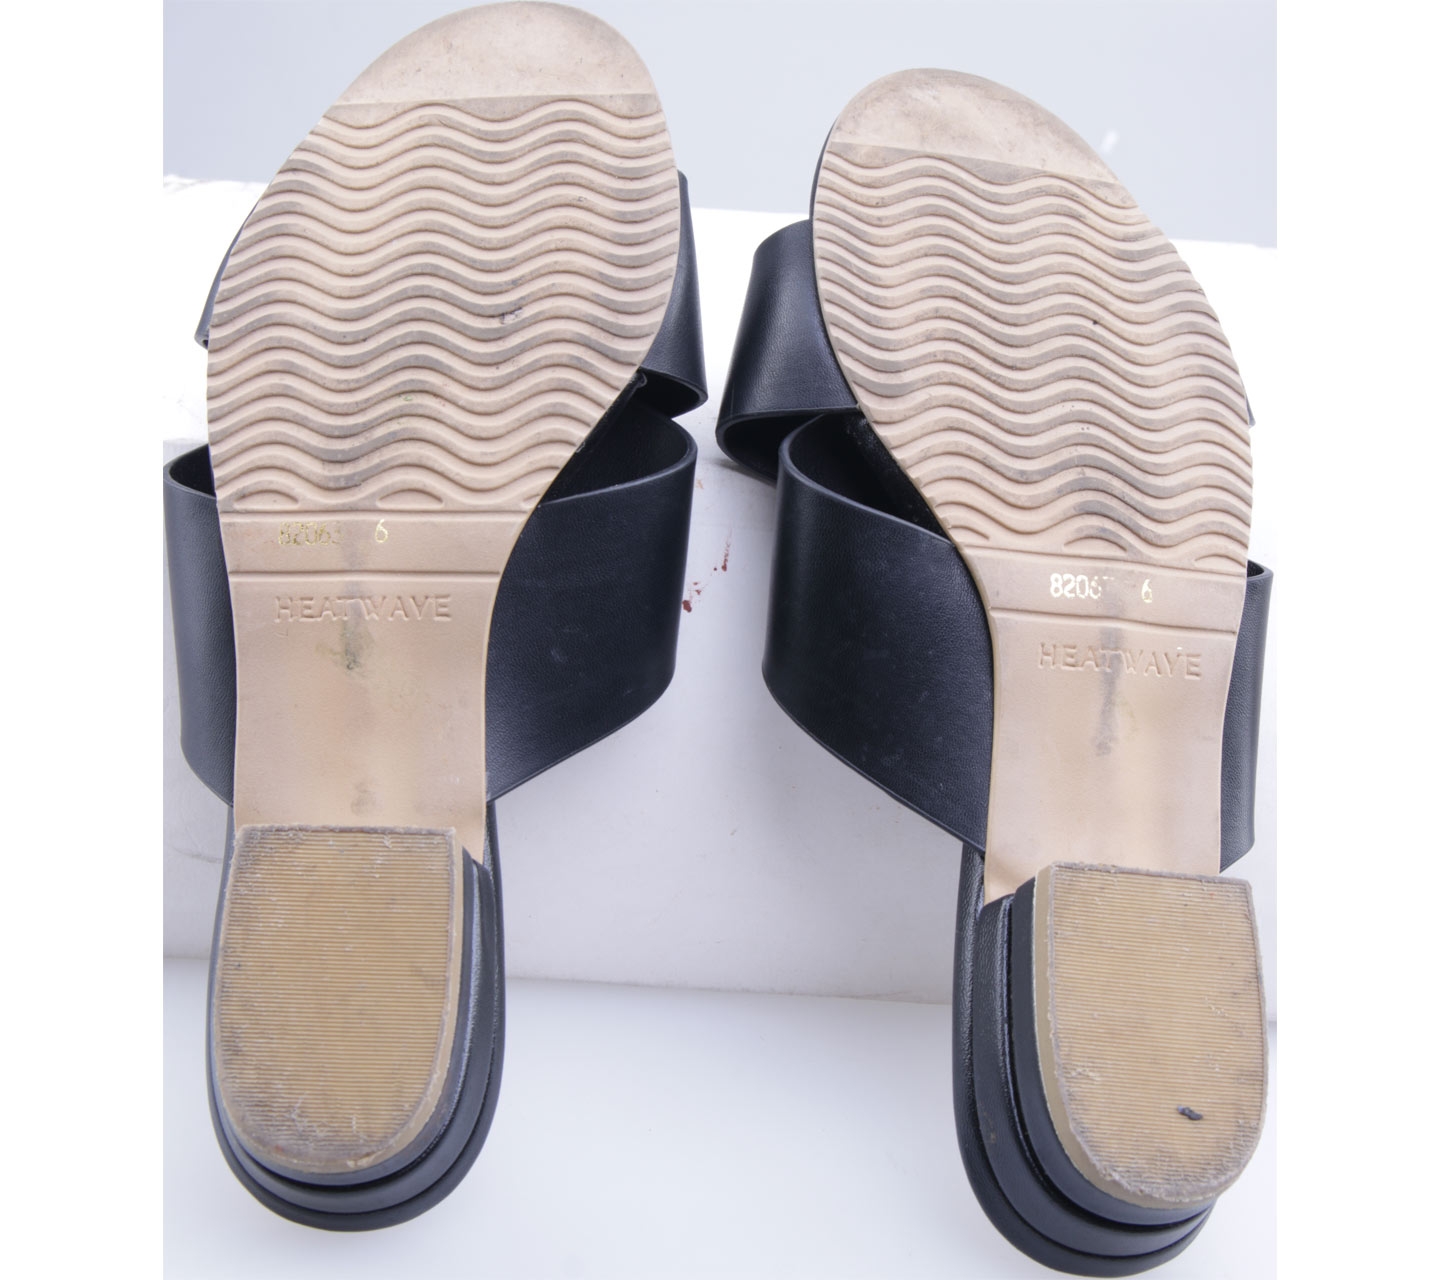 Heatwave Black And Cream Sandals